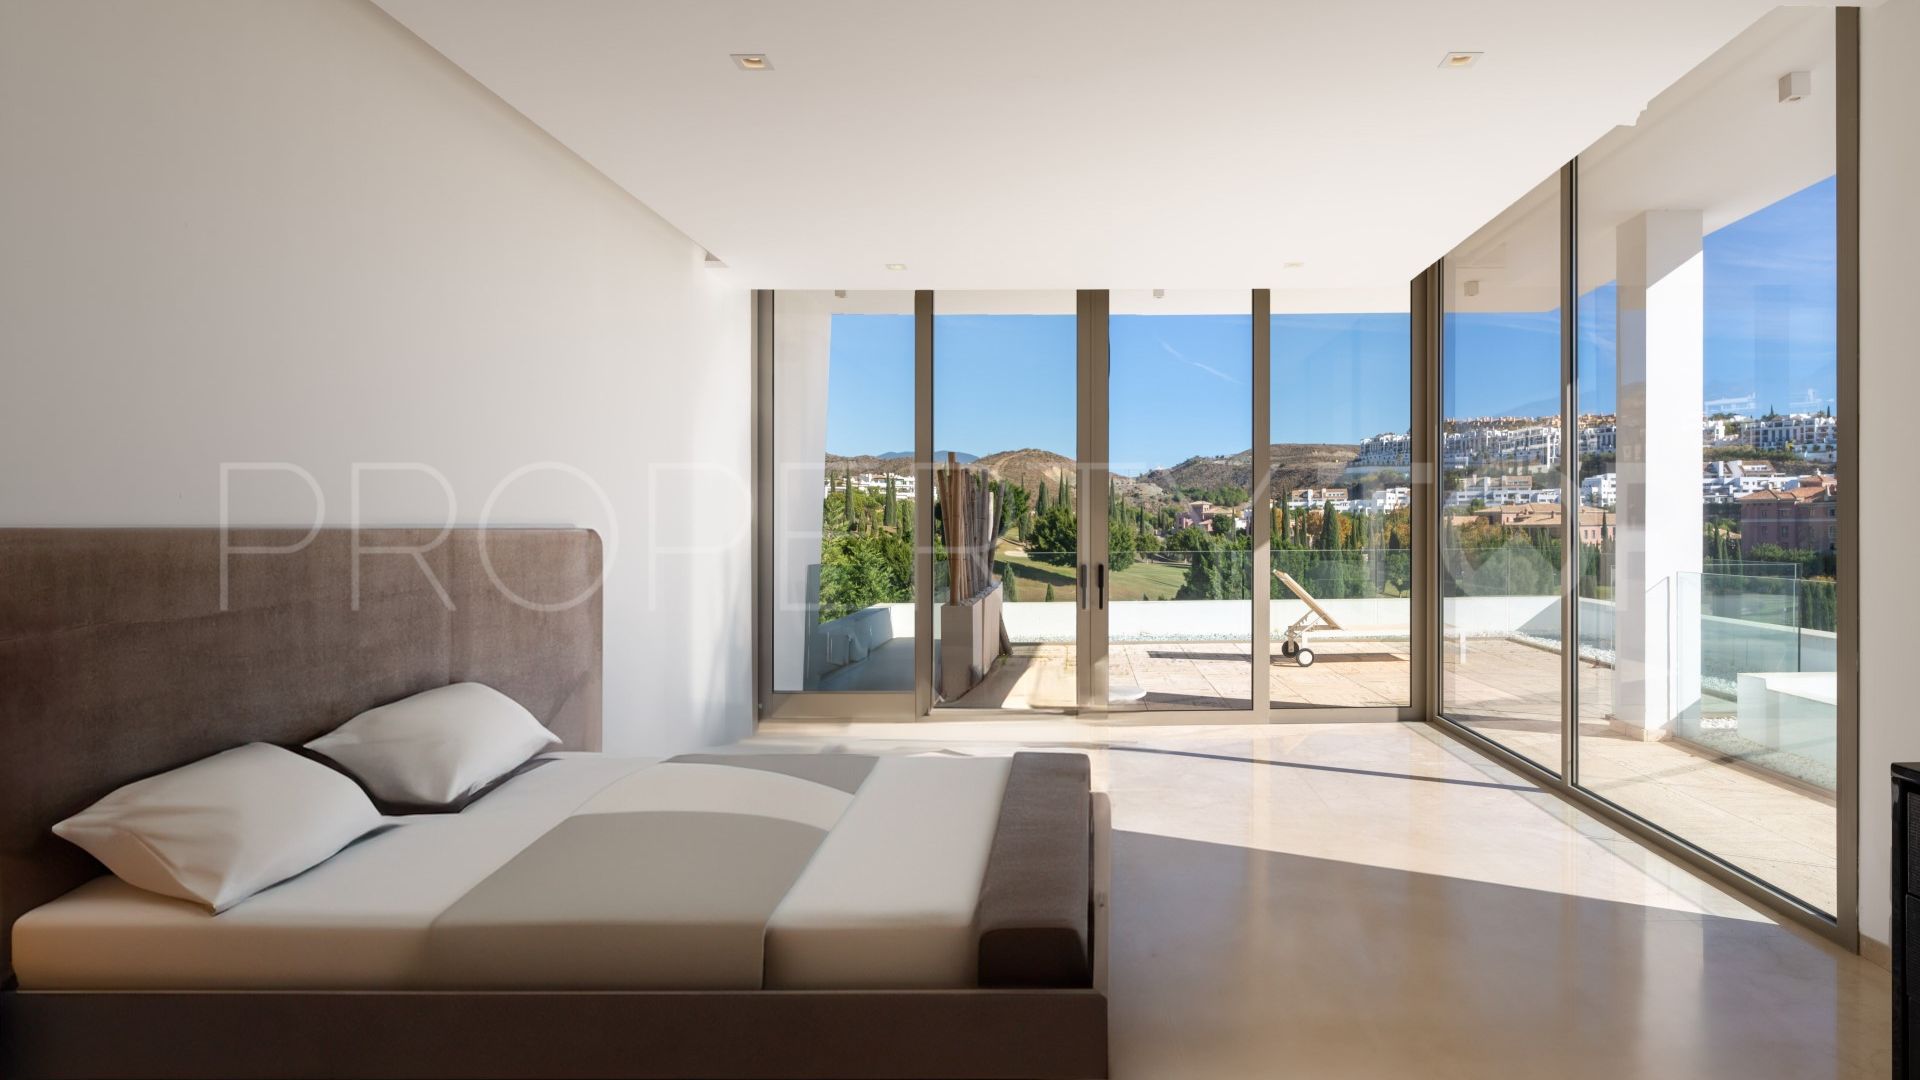 6 bedrooms villa in Los Flamingos Golf for sale